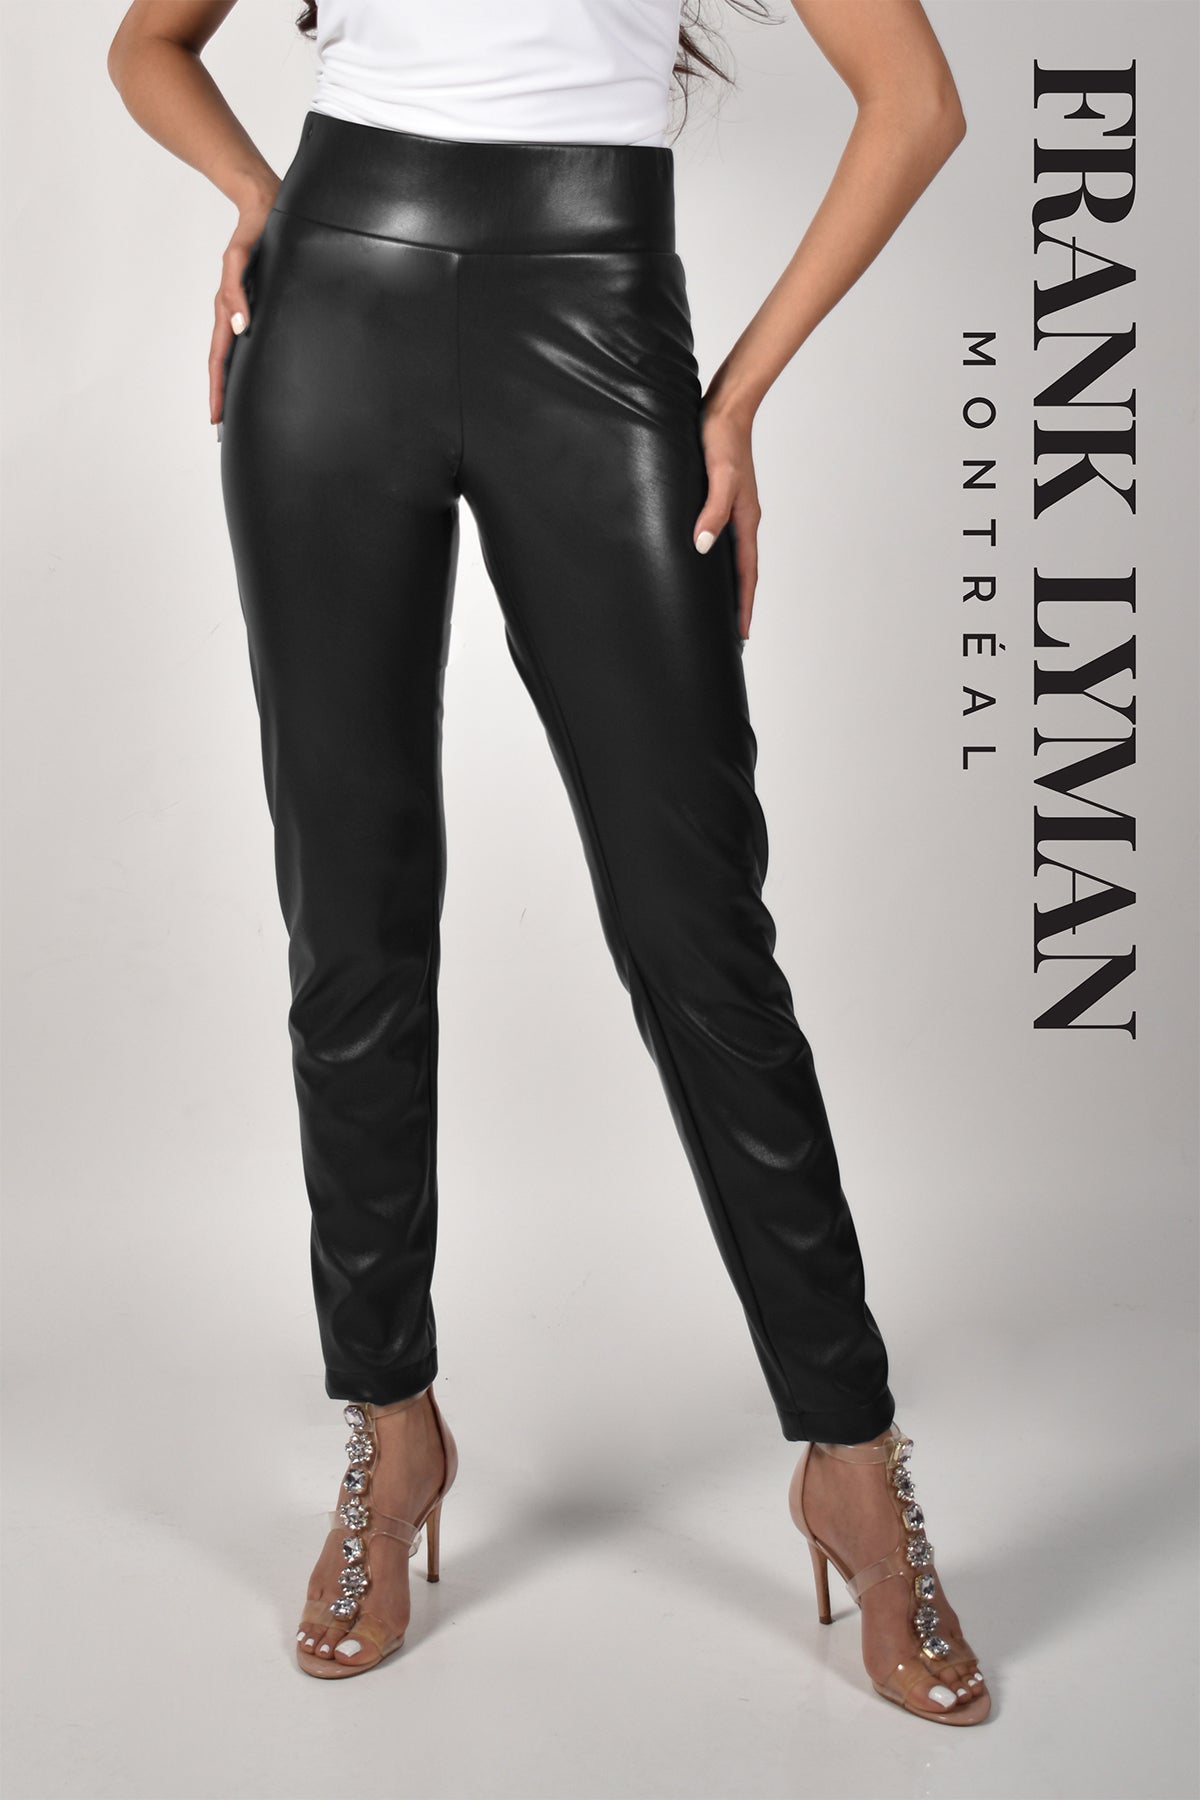 Frank Lyman Montreal Pants-Frank Lyman Montreal Black Pants-Buy Frank Lyman Montreal Pants Online-Frank Lyman Montreal Jeans-Frank Lyman Montreal Online Shop